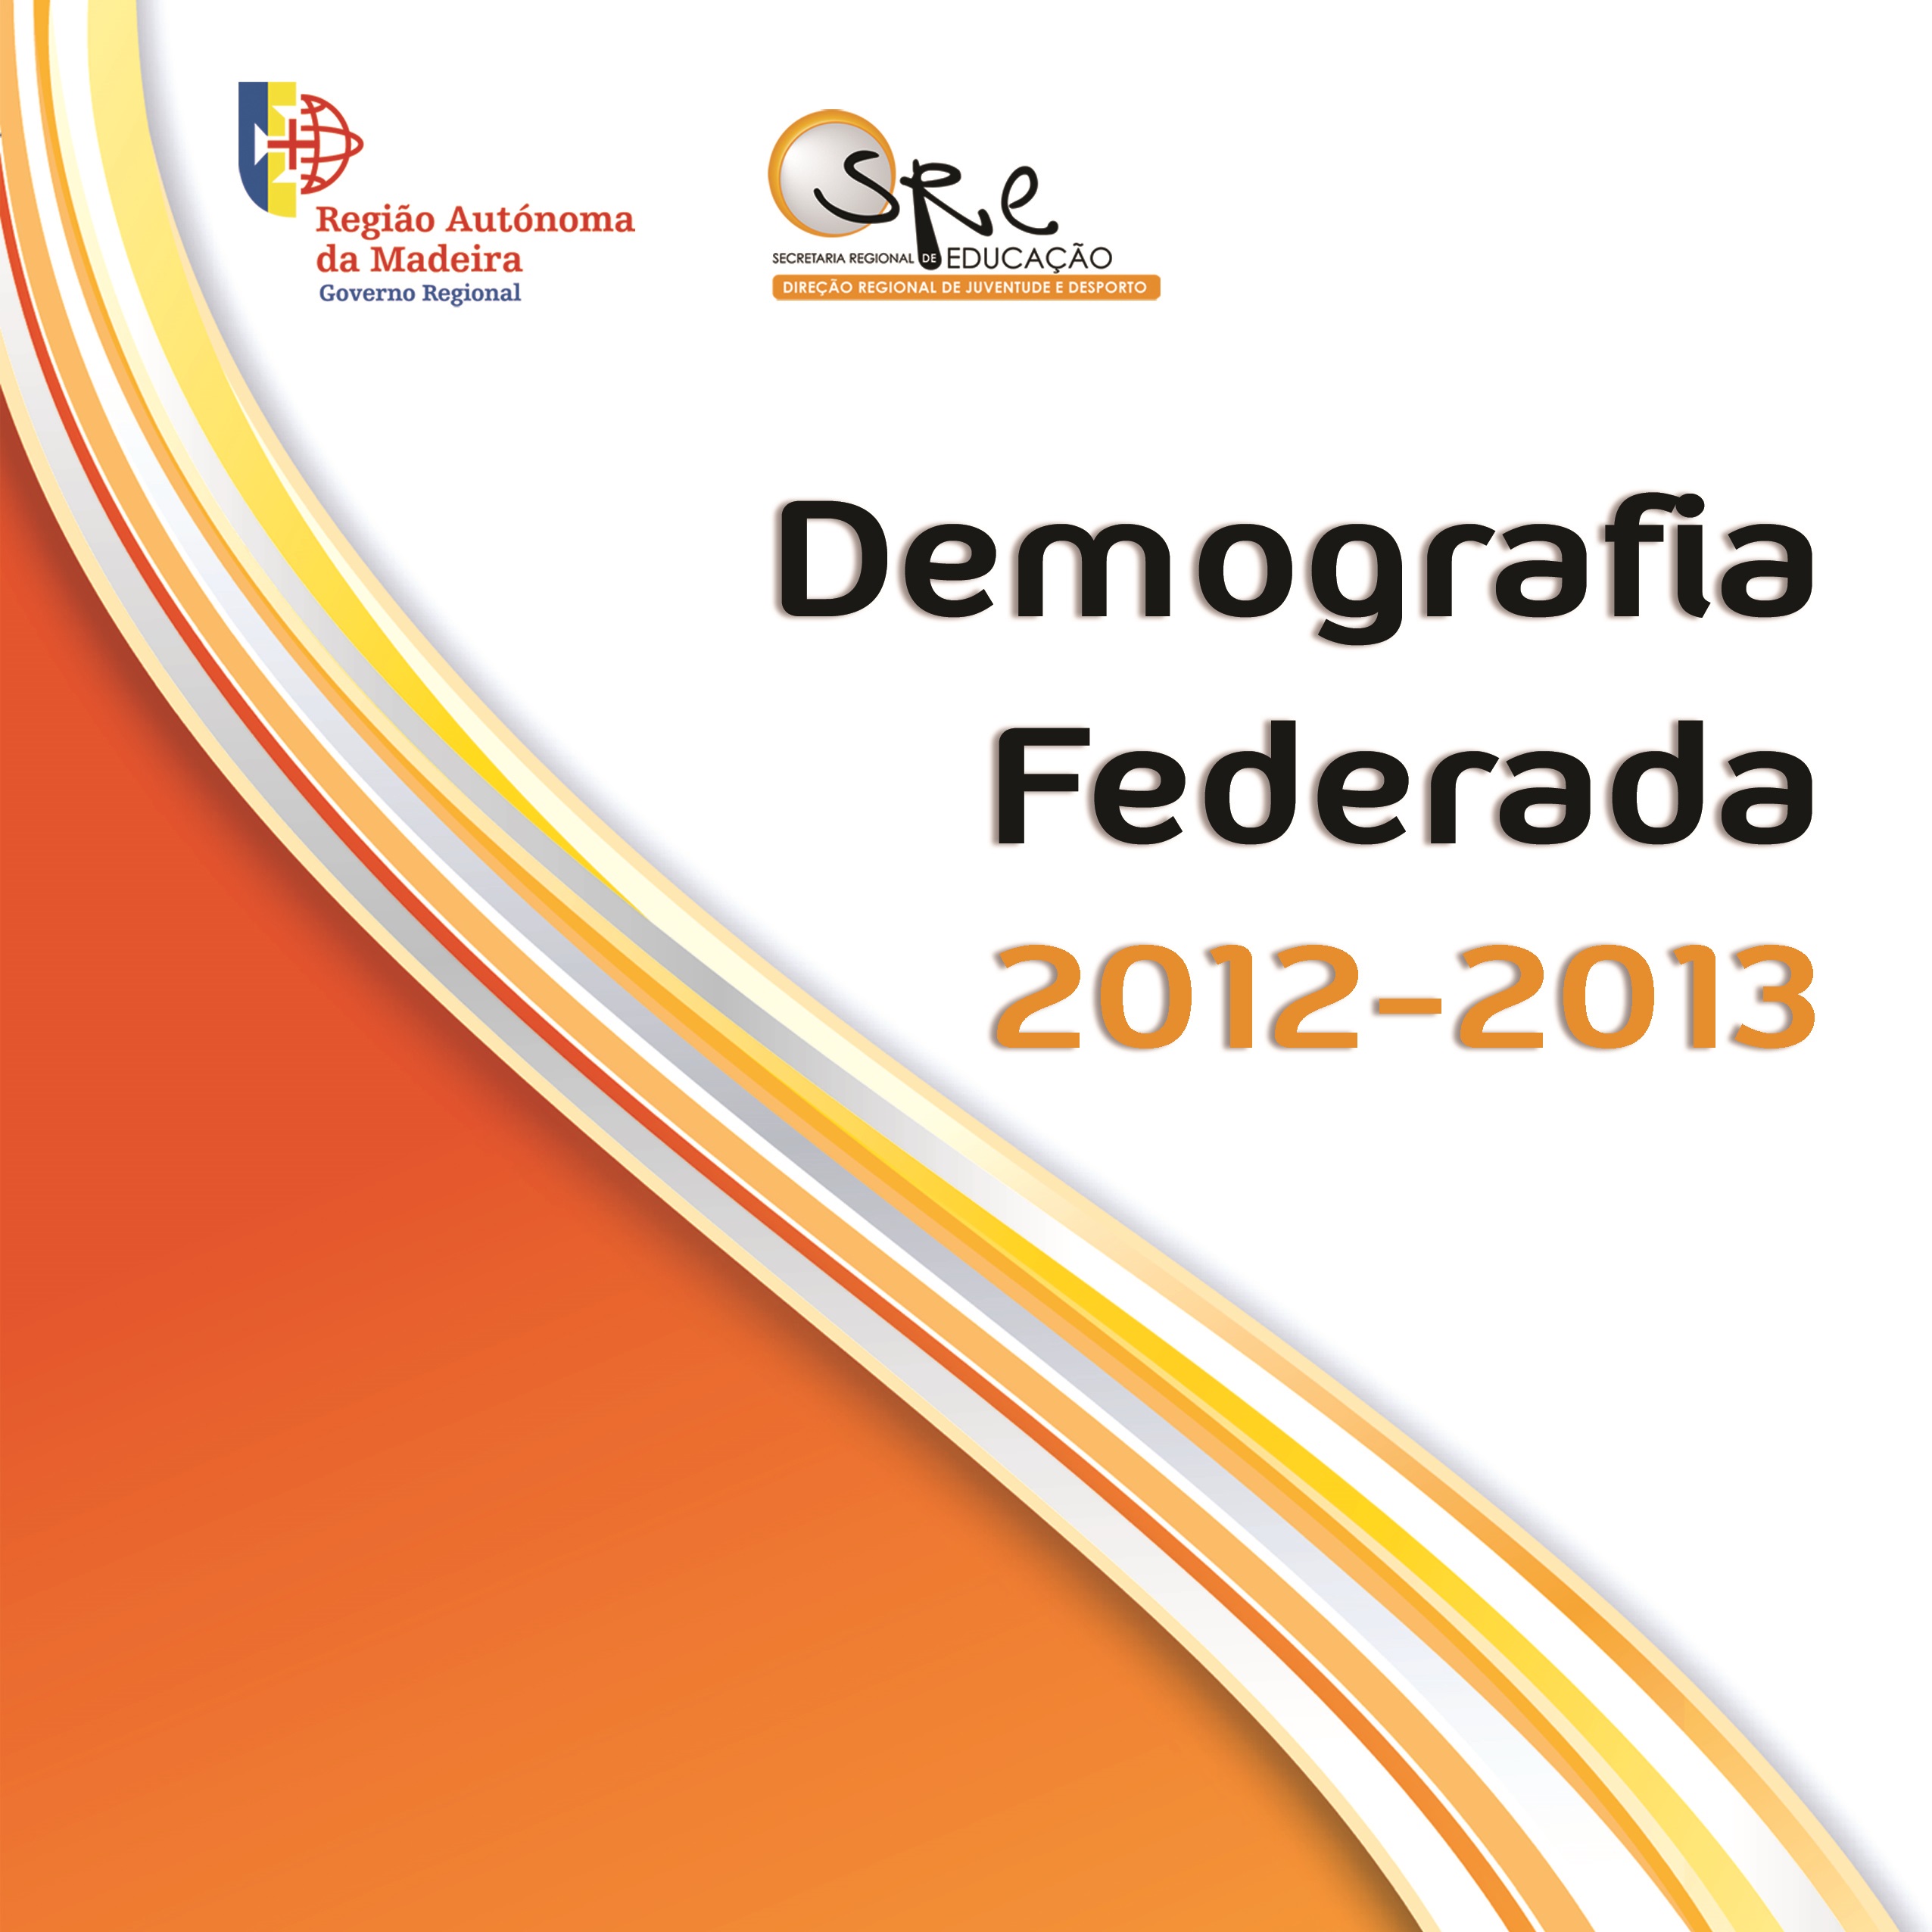 Demografia Federada 2012-2013 já disponível!